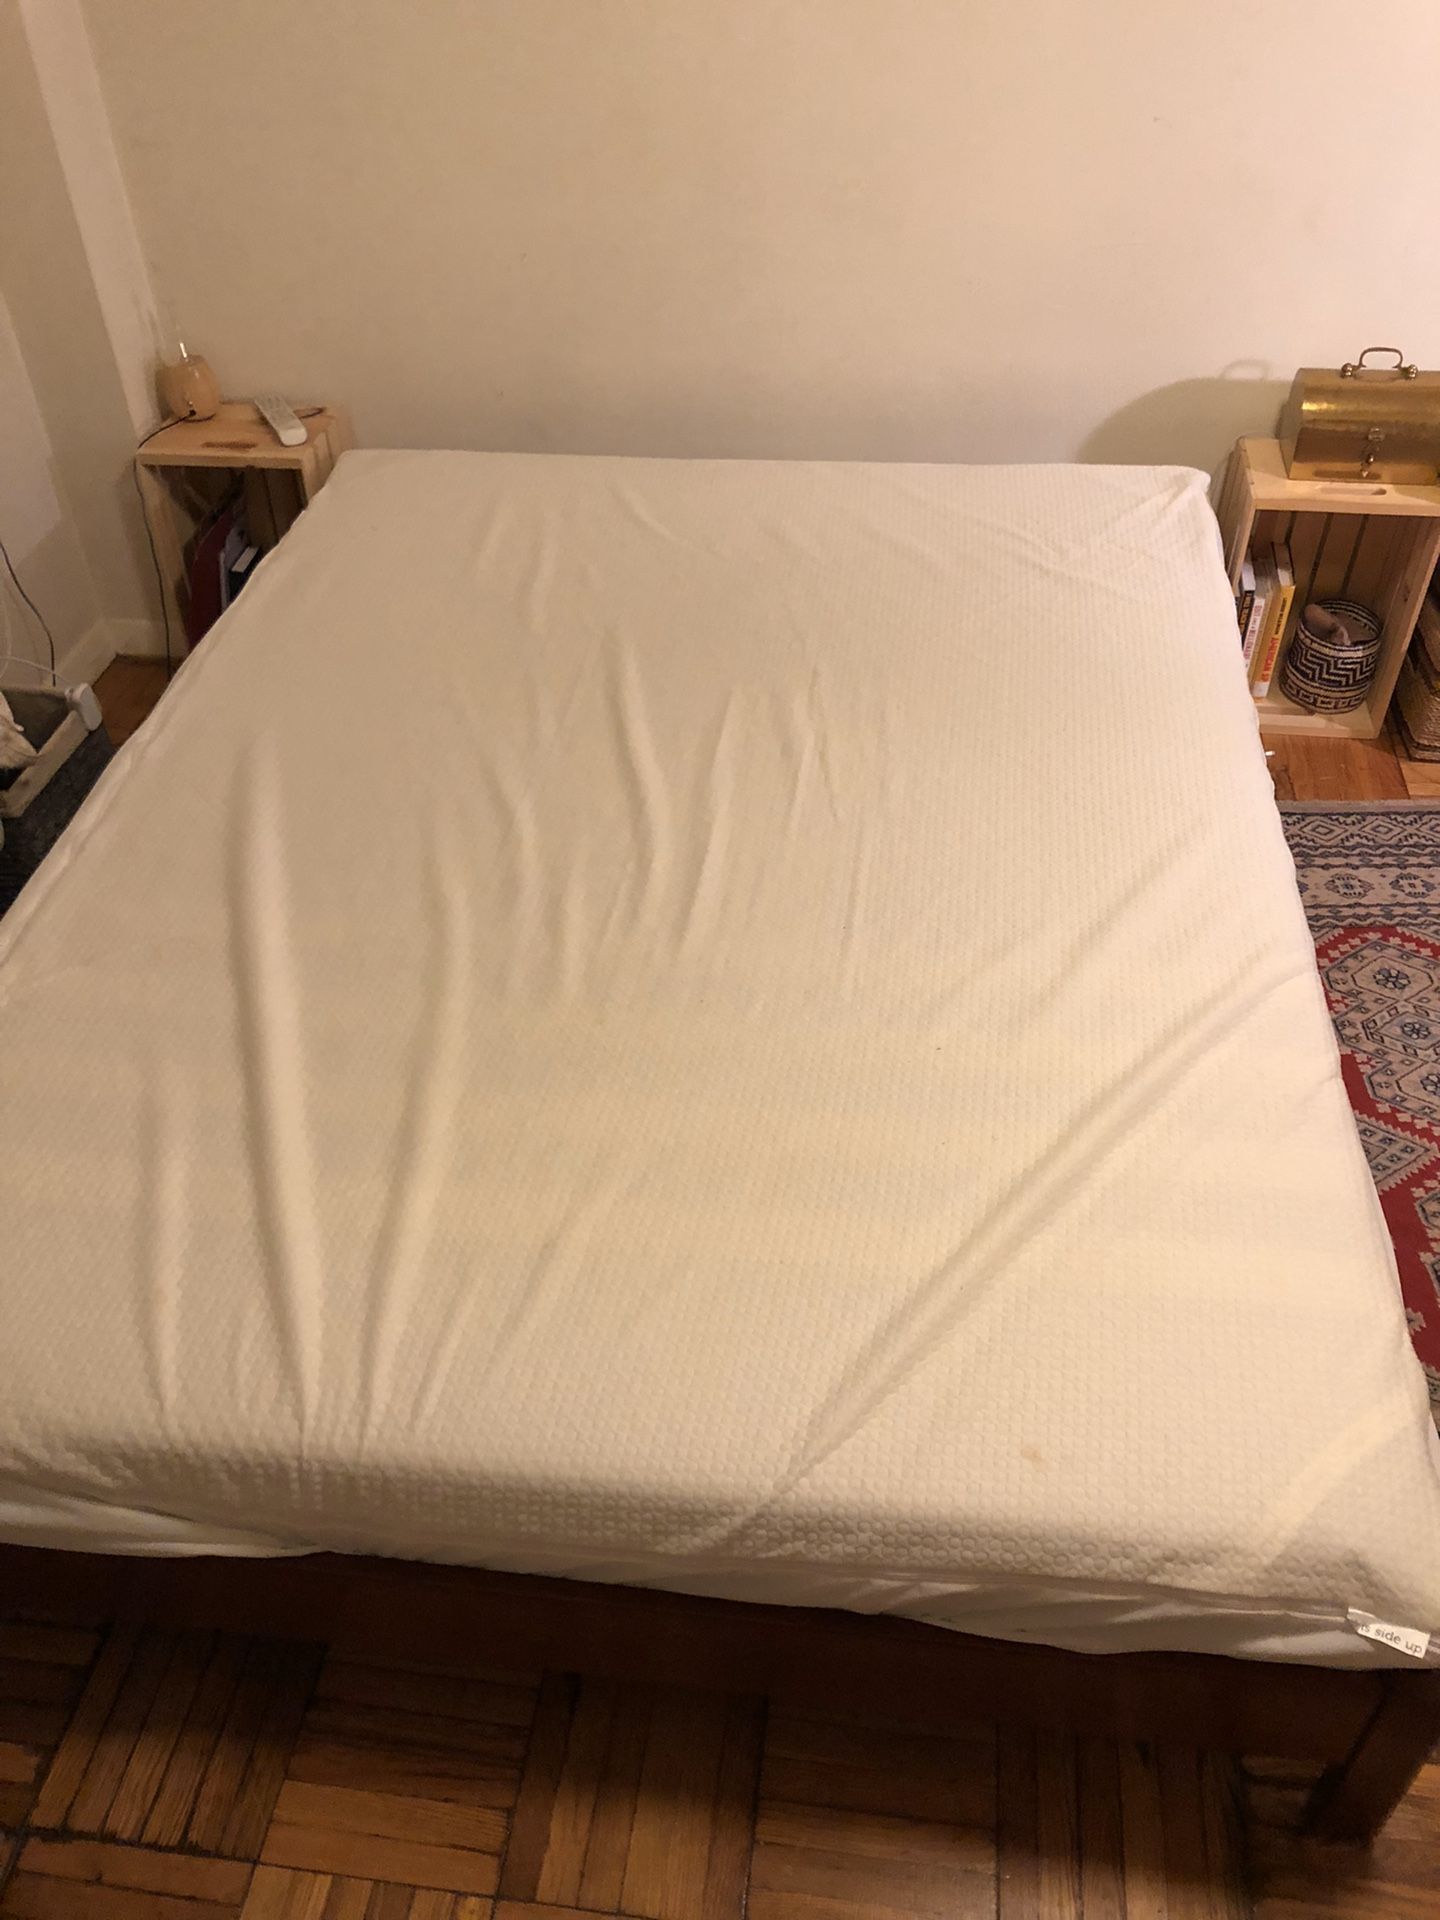 Leesa queen sized mattress + cover/platform bed frame